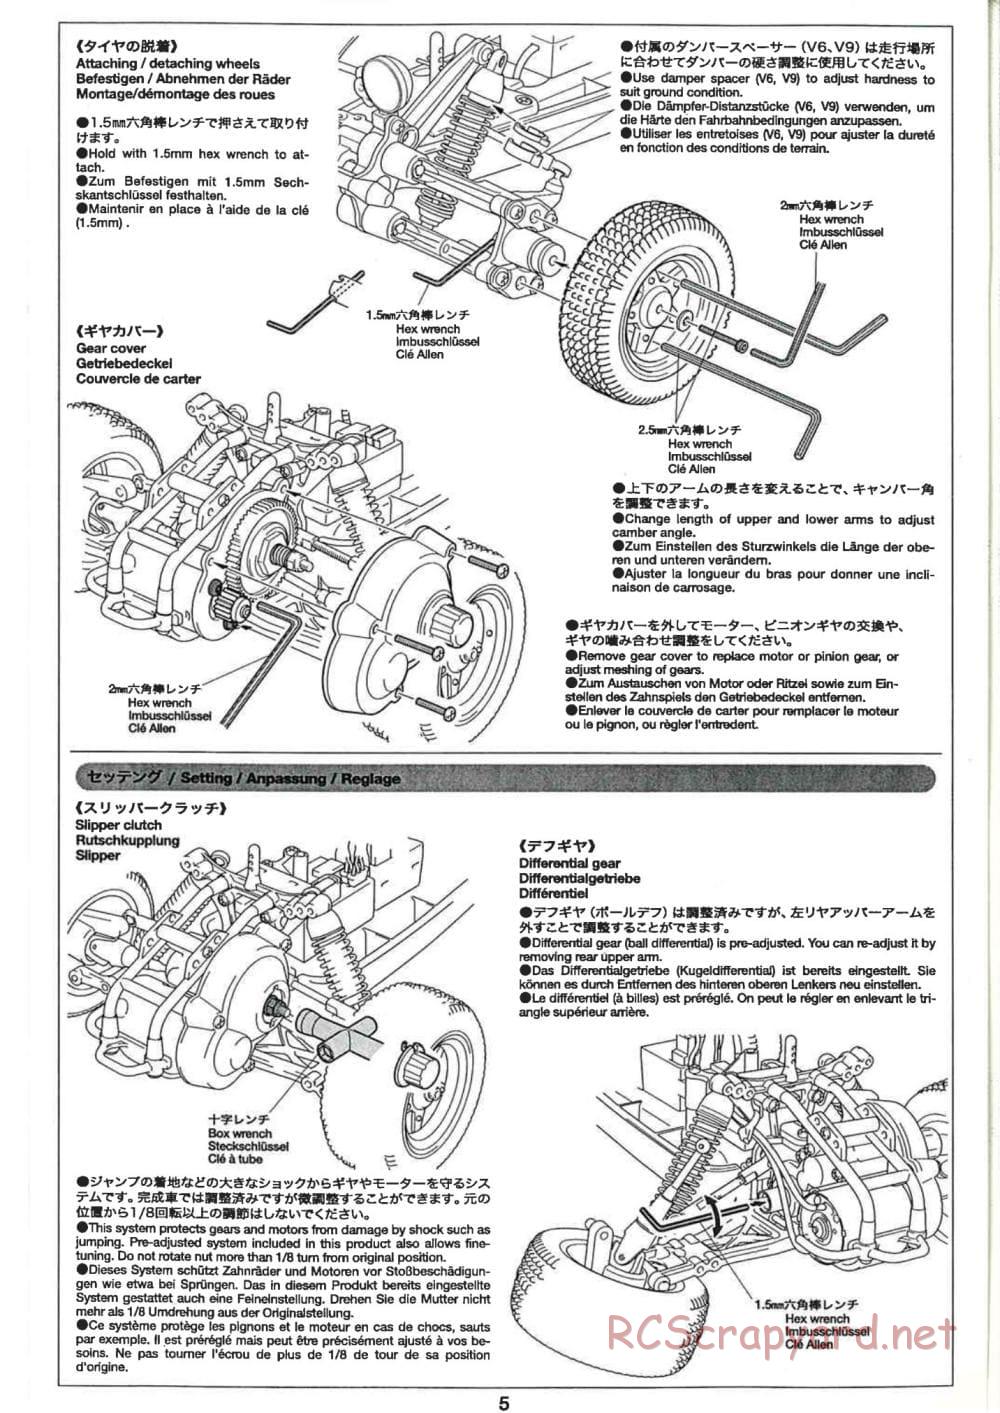 Tamiya - GB-02 Chassis - Manual - Page 5